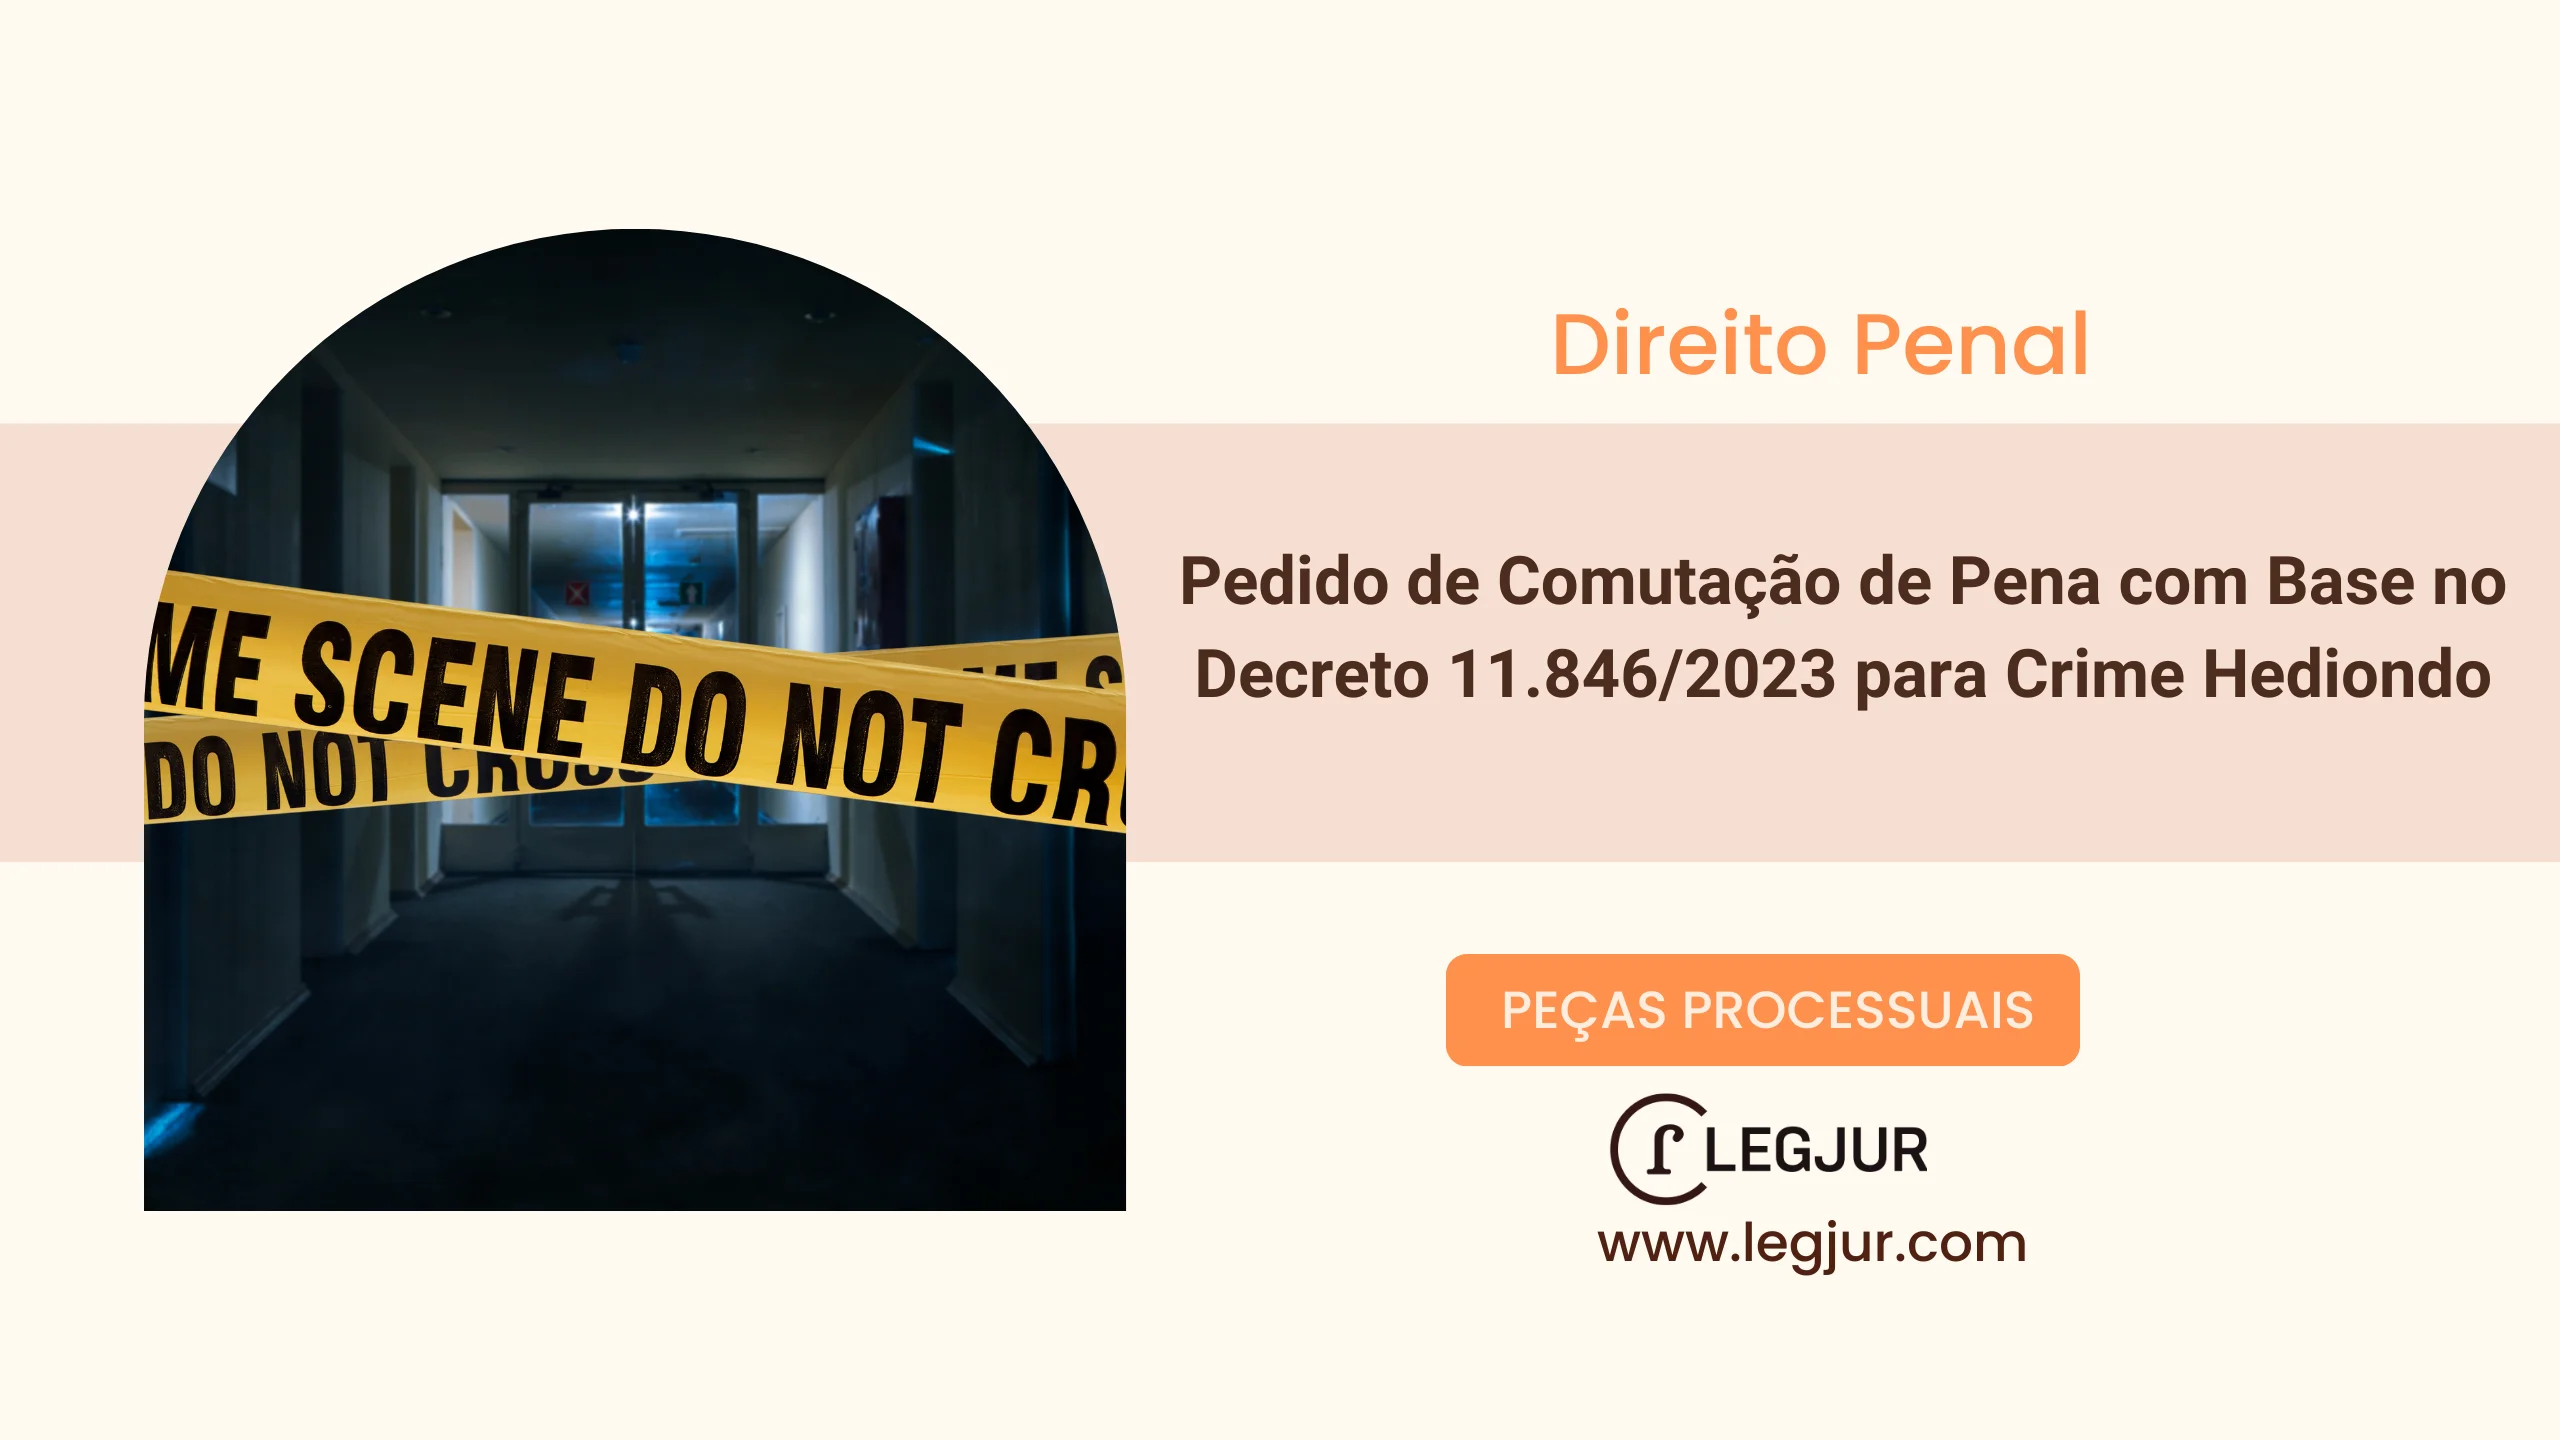 Pedido de Comutação de Pena com Base no Decreto 11.846/2023 para Crime Hediondo